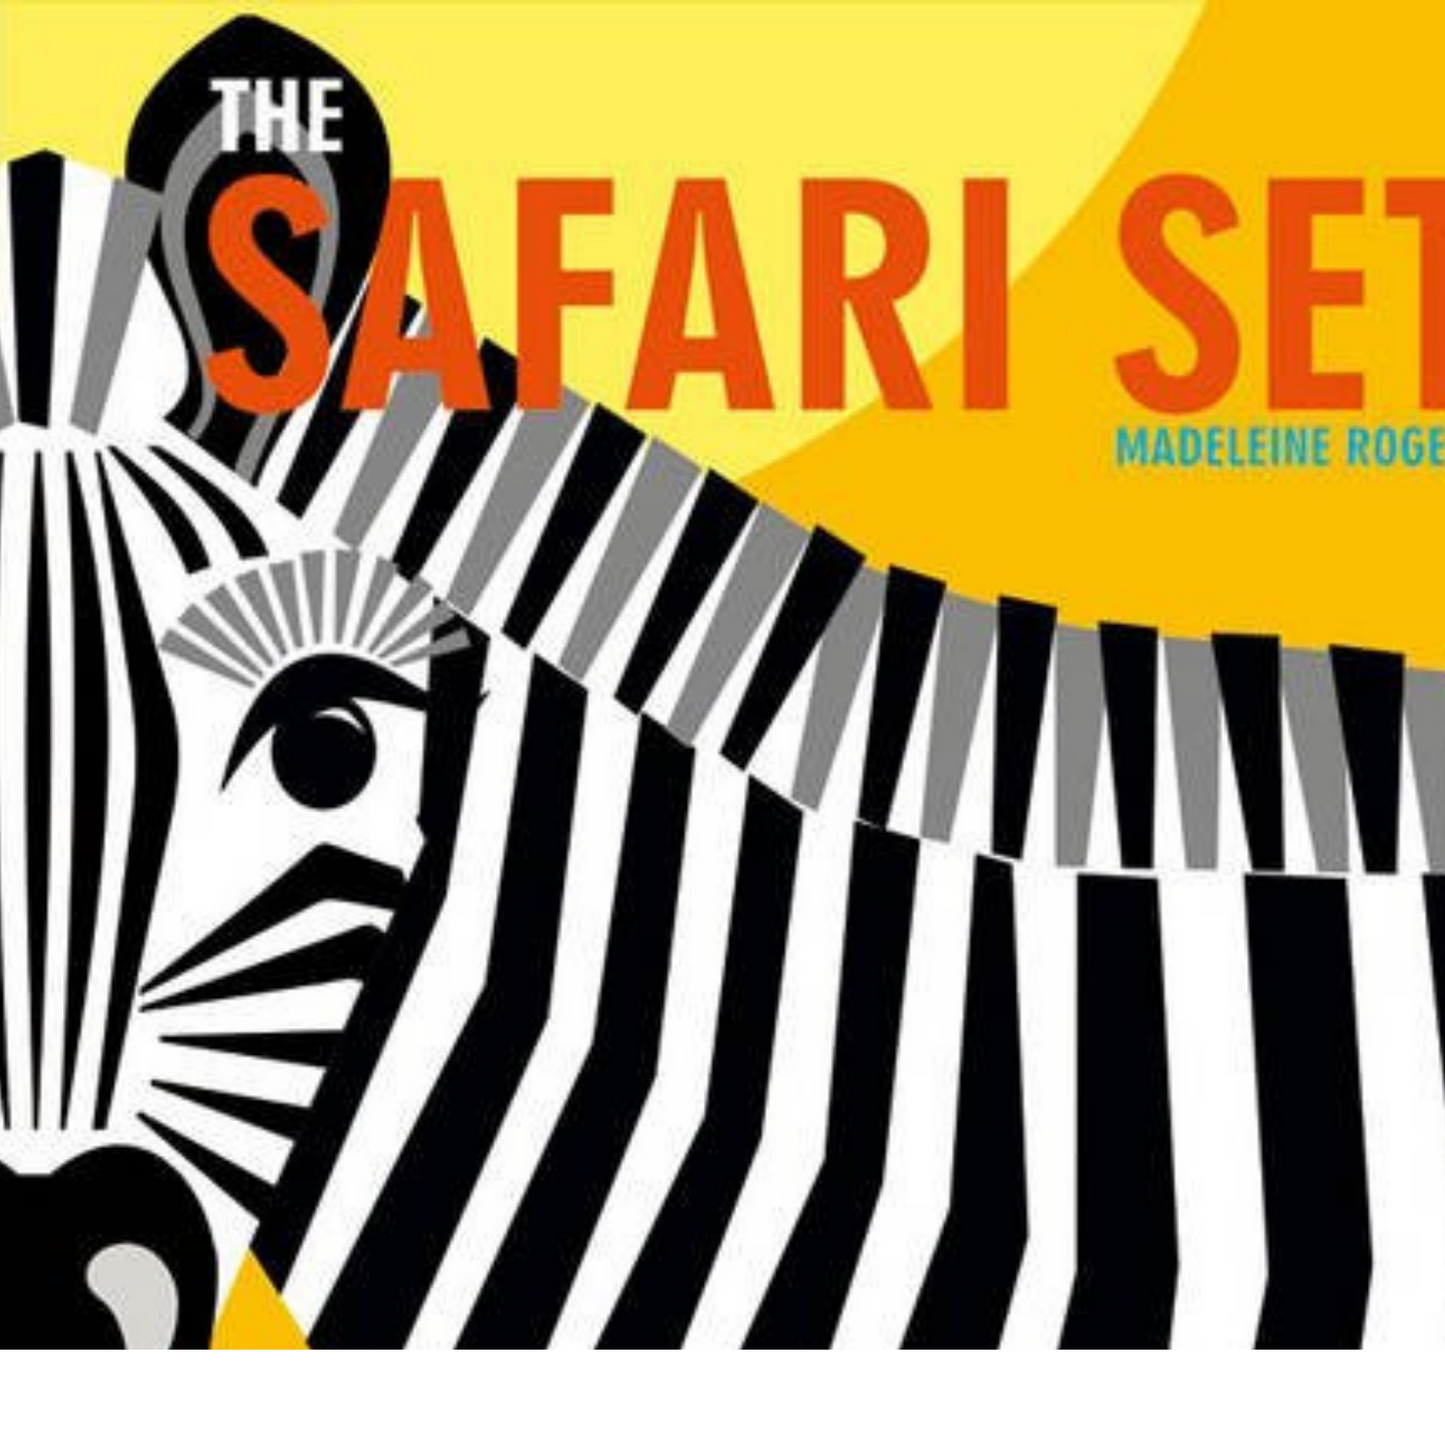 Safari Theme Sensory Surprise Box - Suitable For 10 Months +